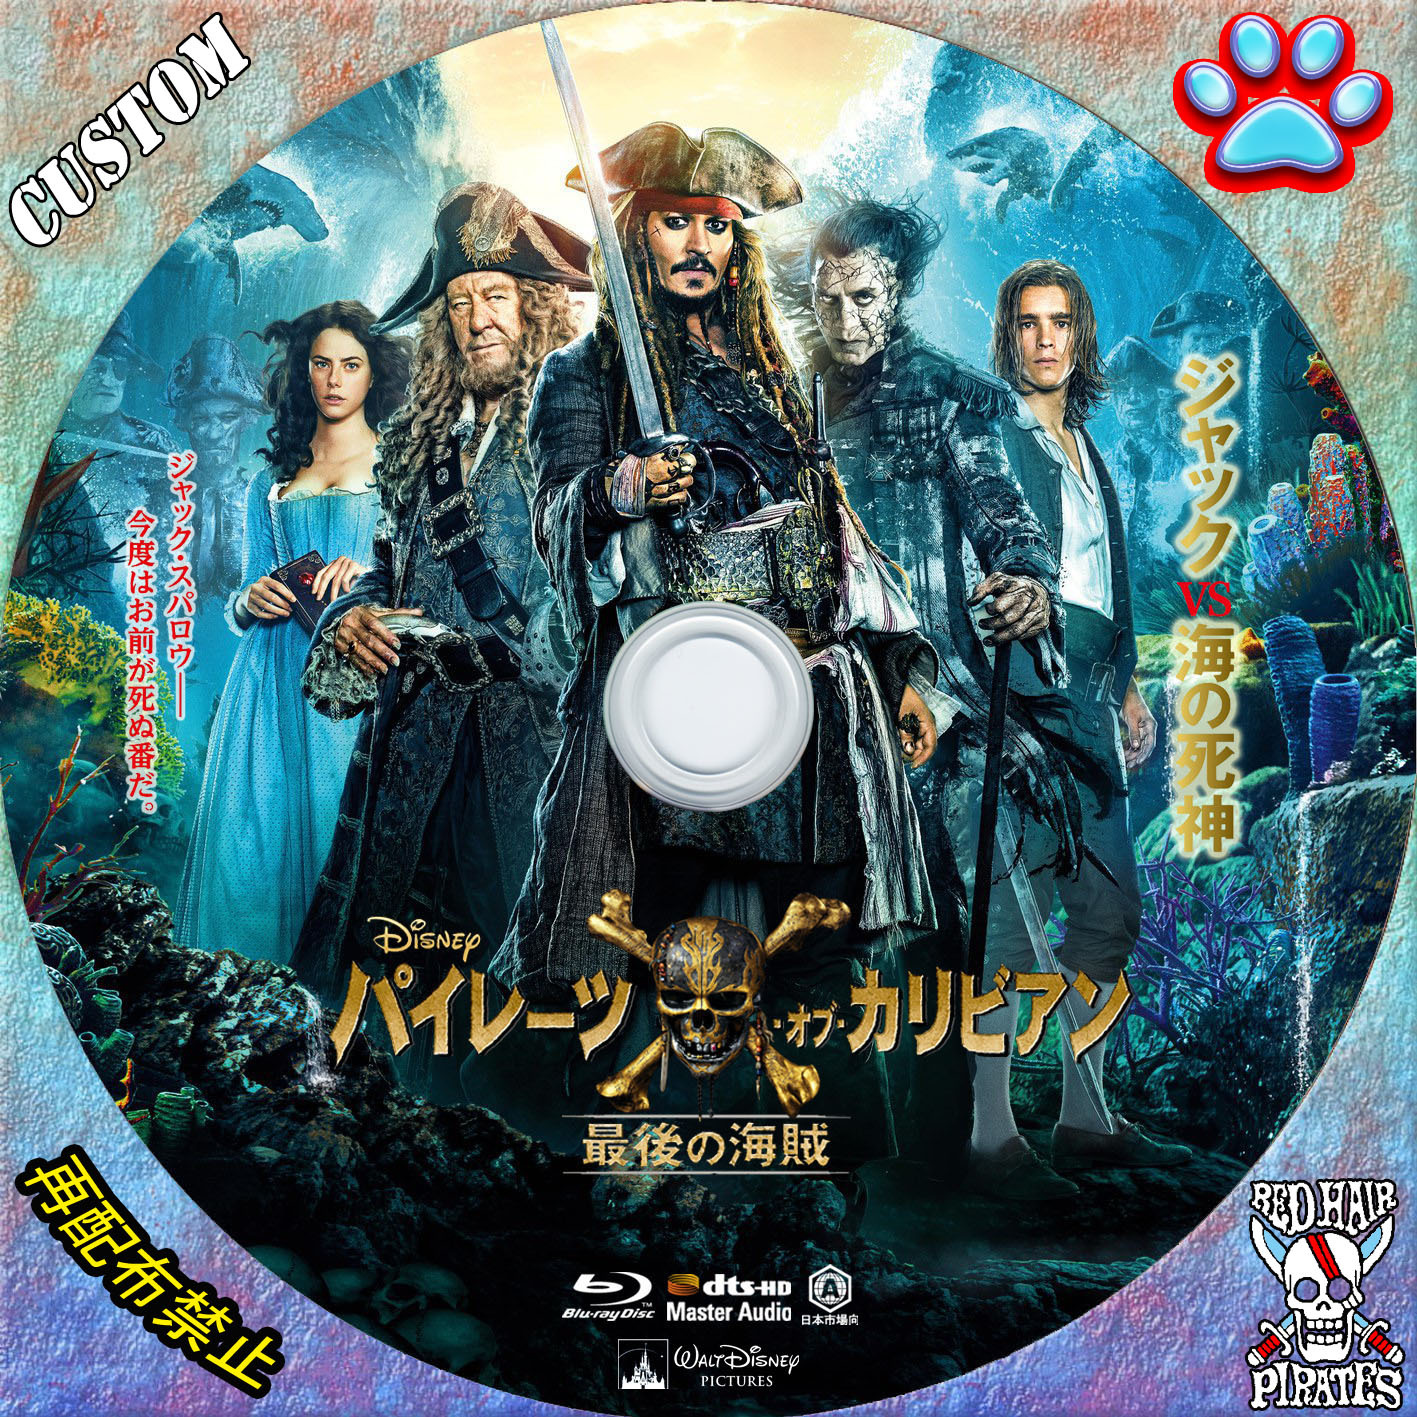 【売れ筋】 パイレーツ オブ カリビアン 最後の海賊 DVD noys99.jpn.org